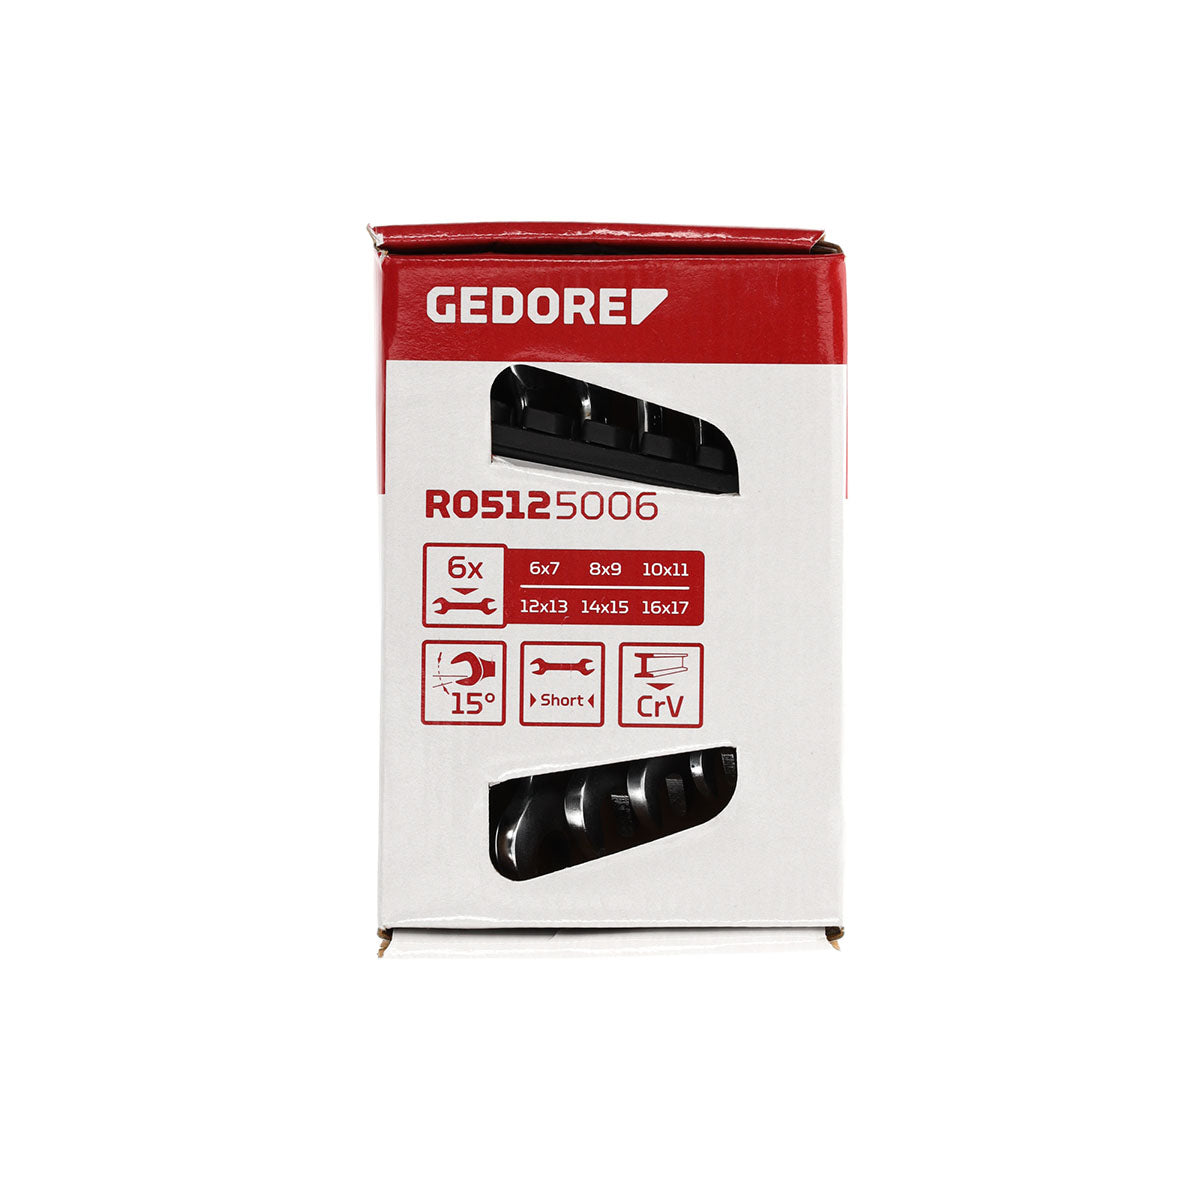 GEDORE red R05125006 - Juego de 6 llaves fijas, modelo corto, 6-17 mm (3300958)